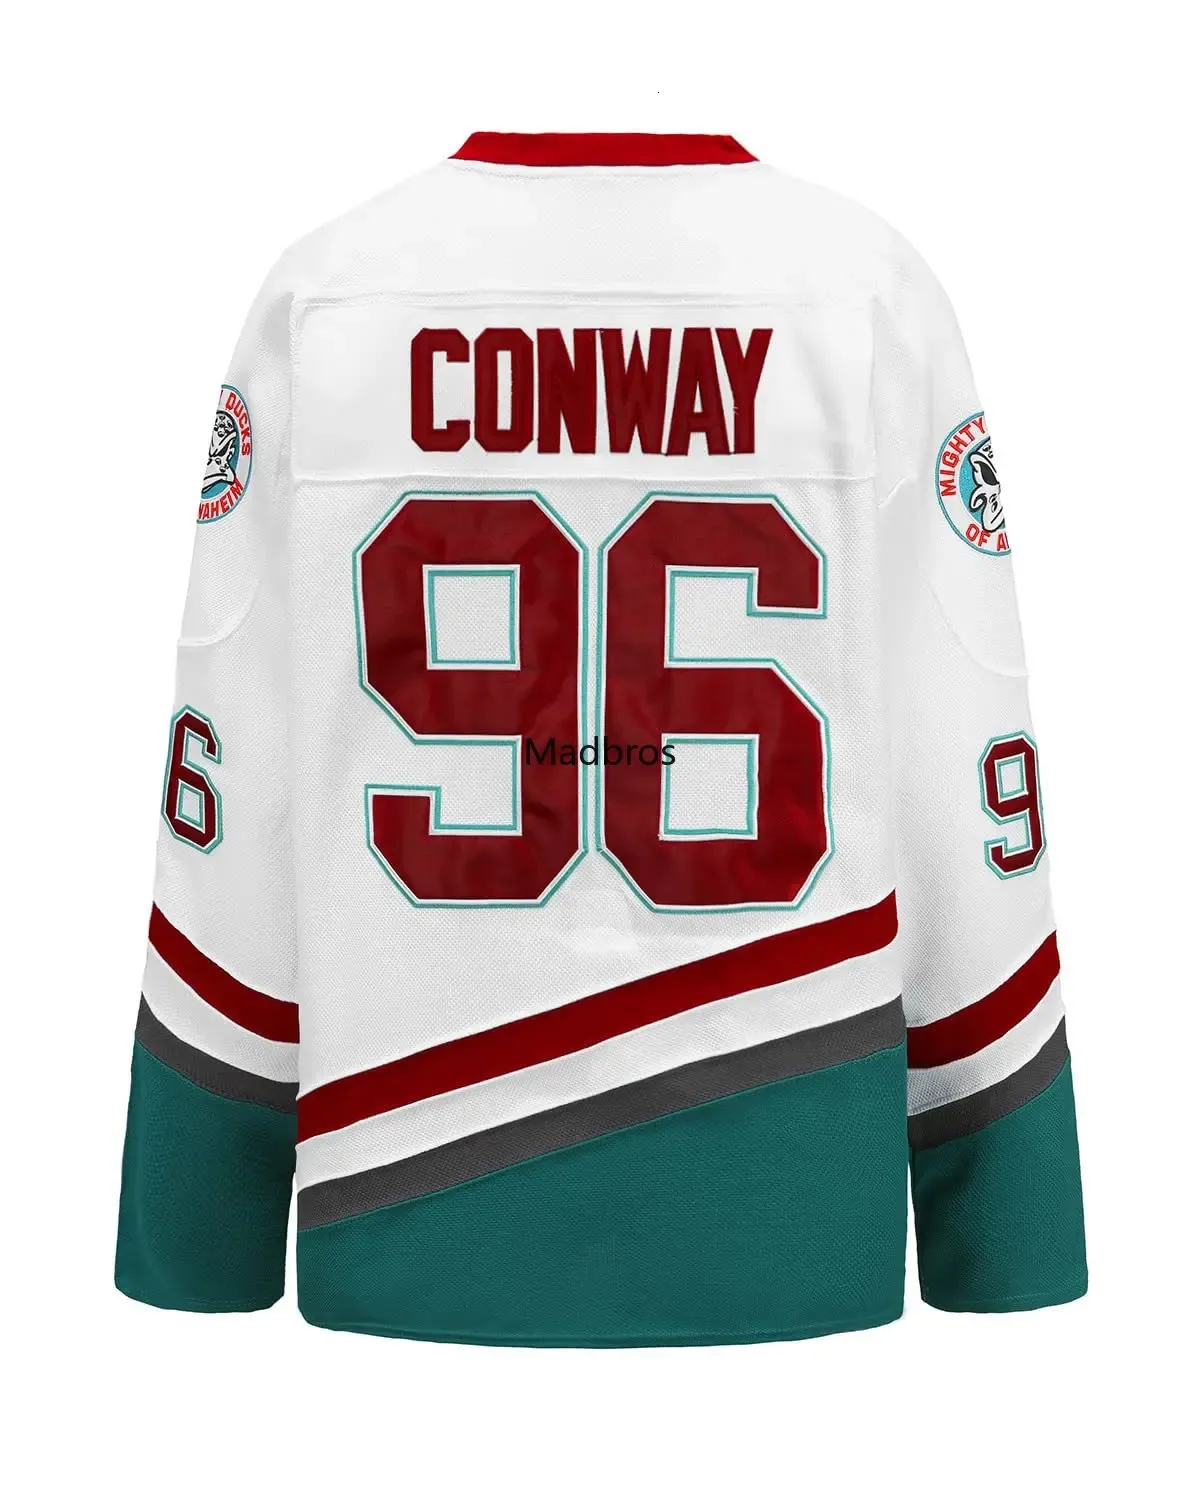 Outros artigos esportivos Charlie Conway Jersey Mighty Ducks Hóquei 9 Paul Kariya Jerseys Suéter esportivo Tudo costurado Camisa de filme Us Tamanho S XXXL 231204